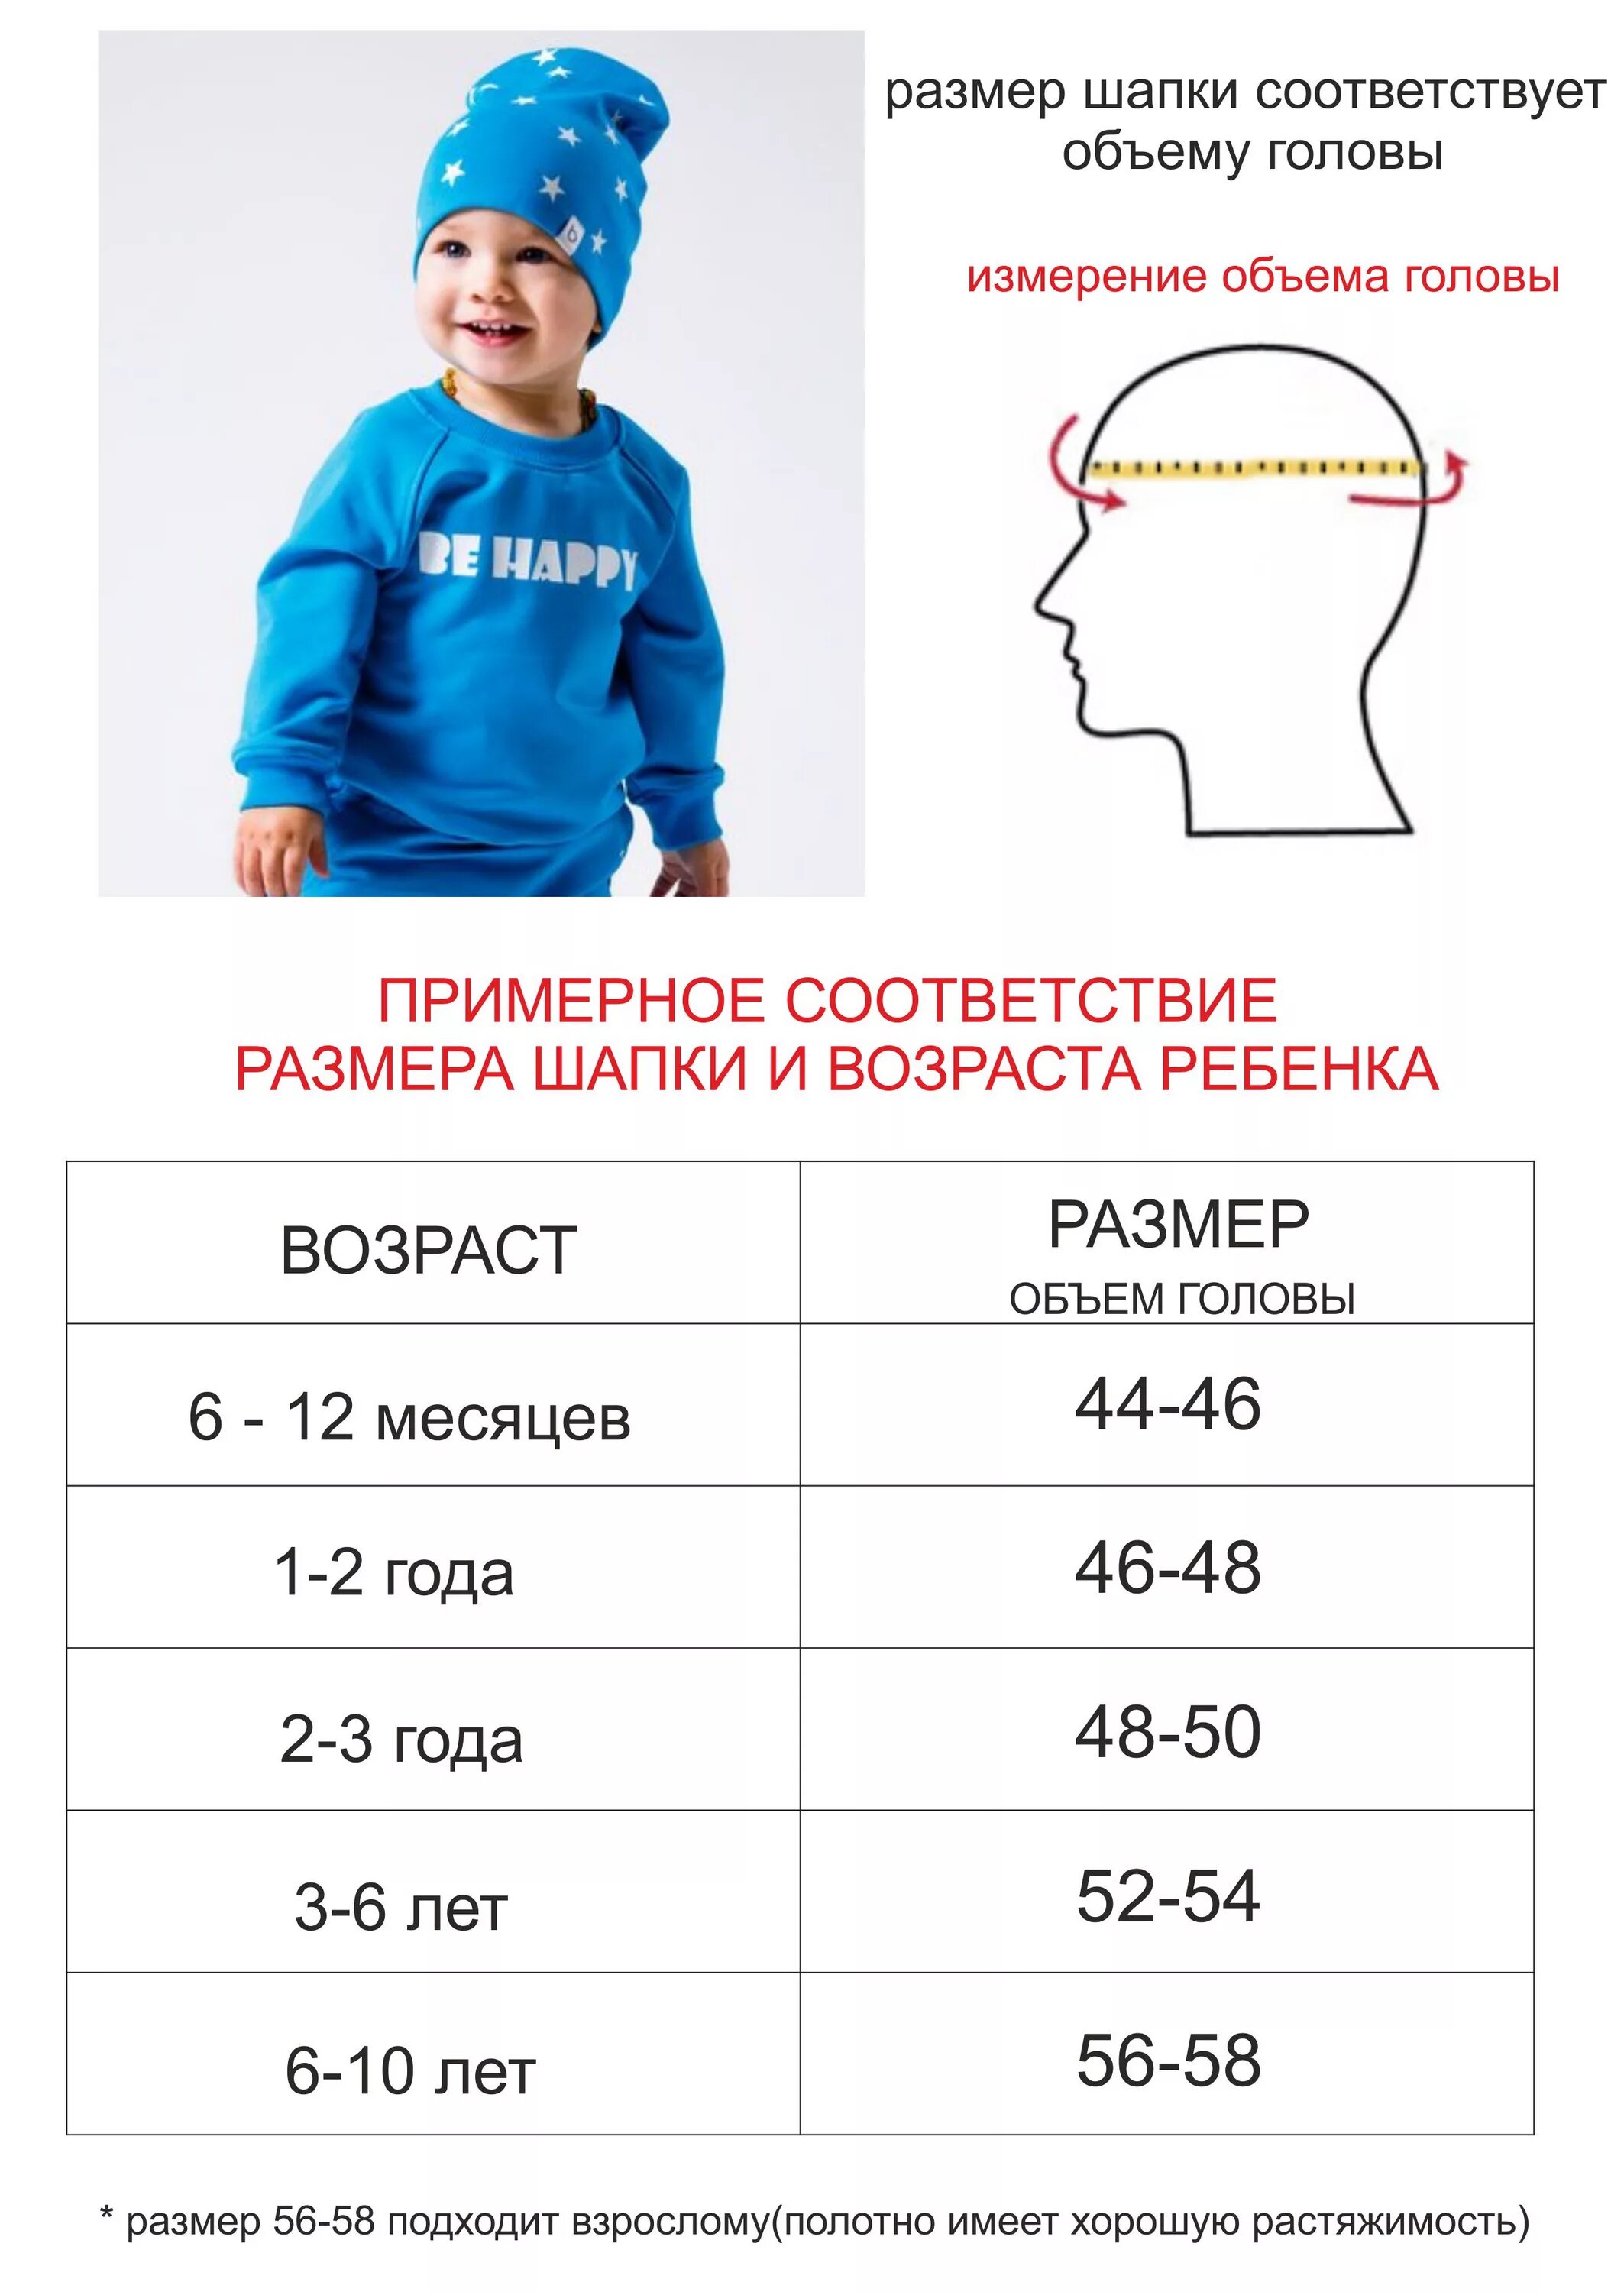 Размер головы в 1 4. Размер головного убора обхват головы 56. Размер шапки на 3 года. Размер шапки ребенка 4 года размер. Размер шапки на ребенка 3 года.